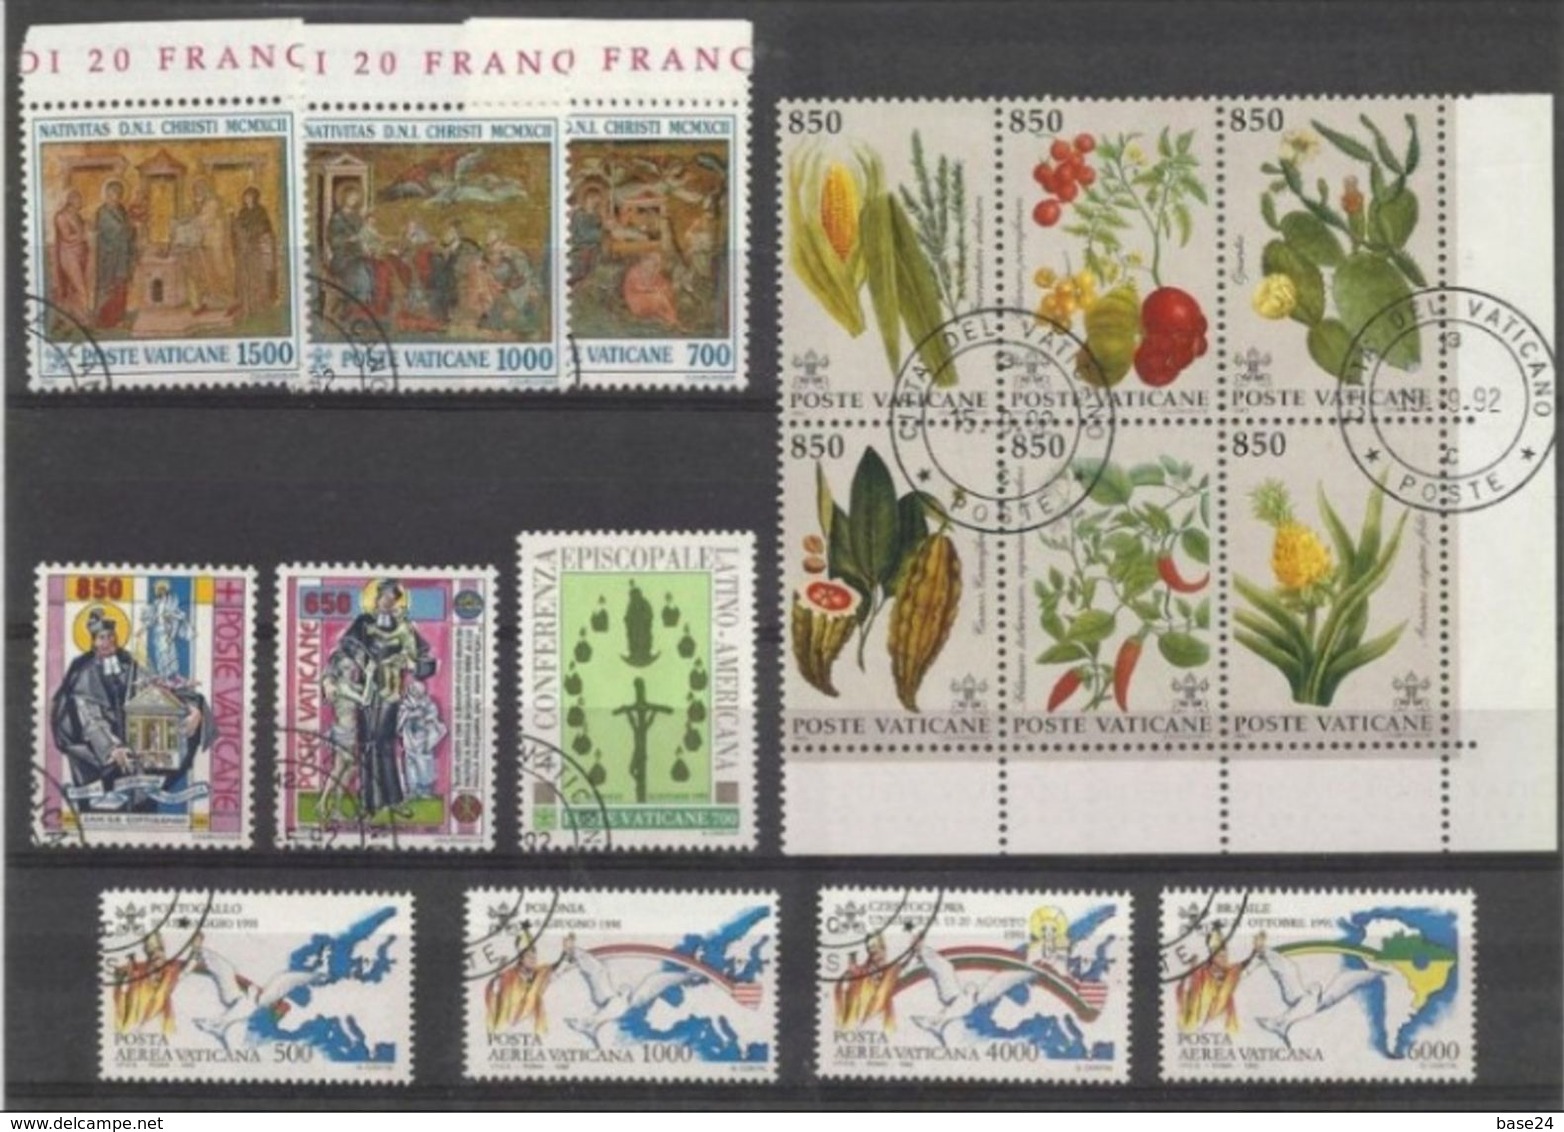 1992 Vaticano Vatican FIORI, COTTOLENGO, CONFERENZA EPISCOPALE, NATALE, AEREA-VIAGGI 5 Serie USATE - Used Stamps